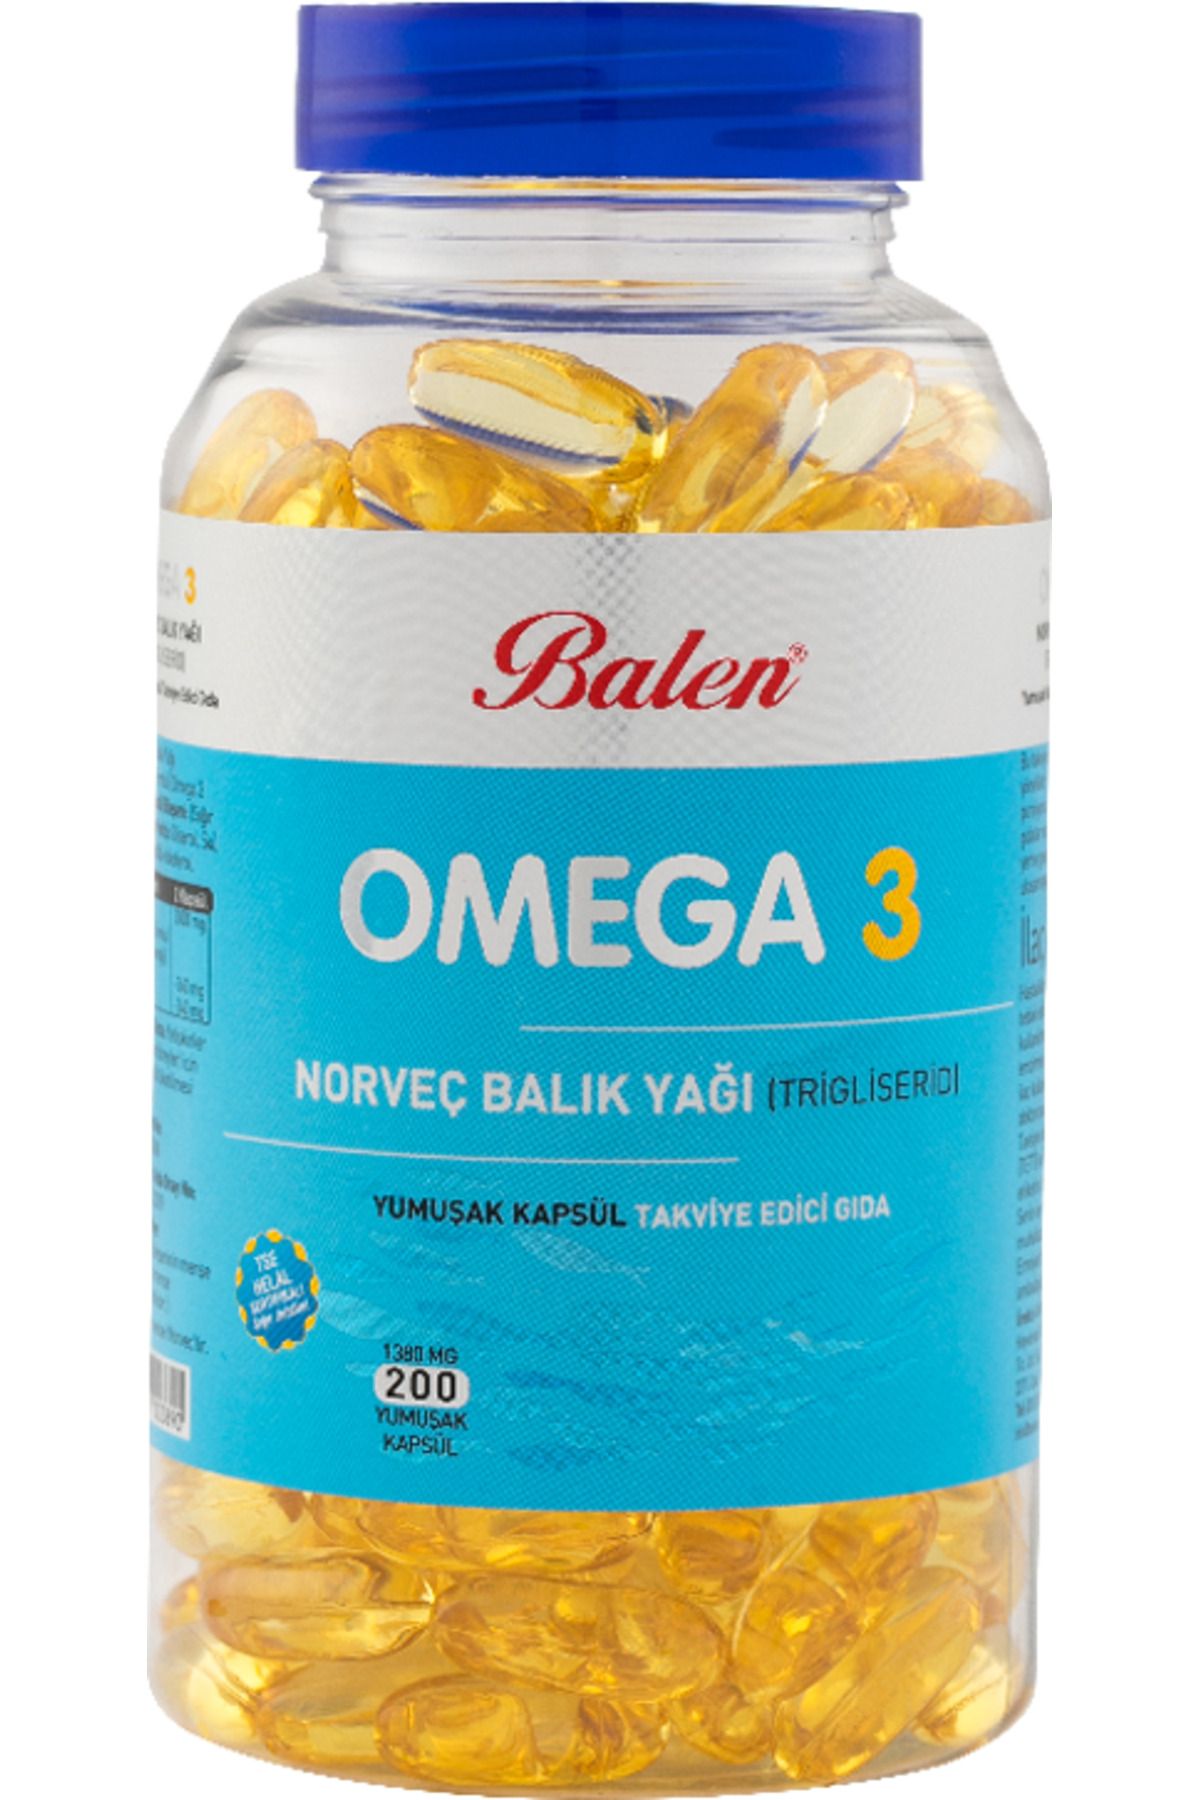 Balen Omega 3 Norveç Balık Yağı (TRİGİLİSERİD) Yumuşak Kapsül 1380 Mg*200